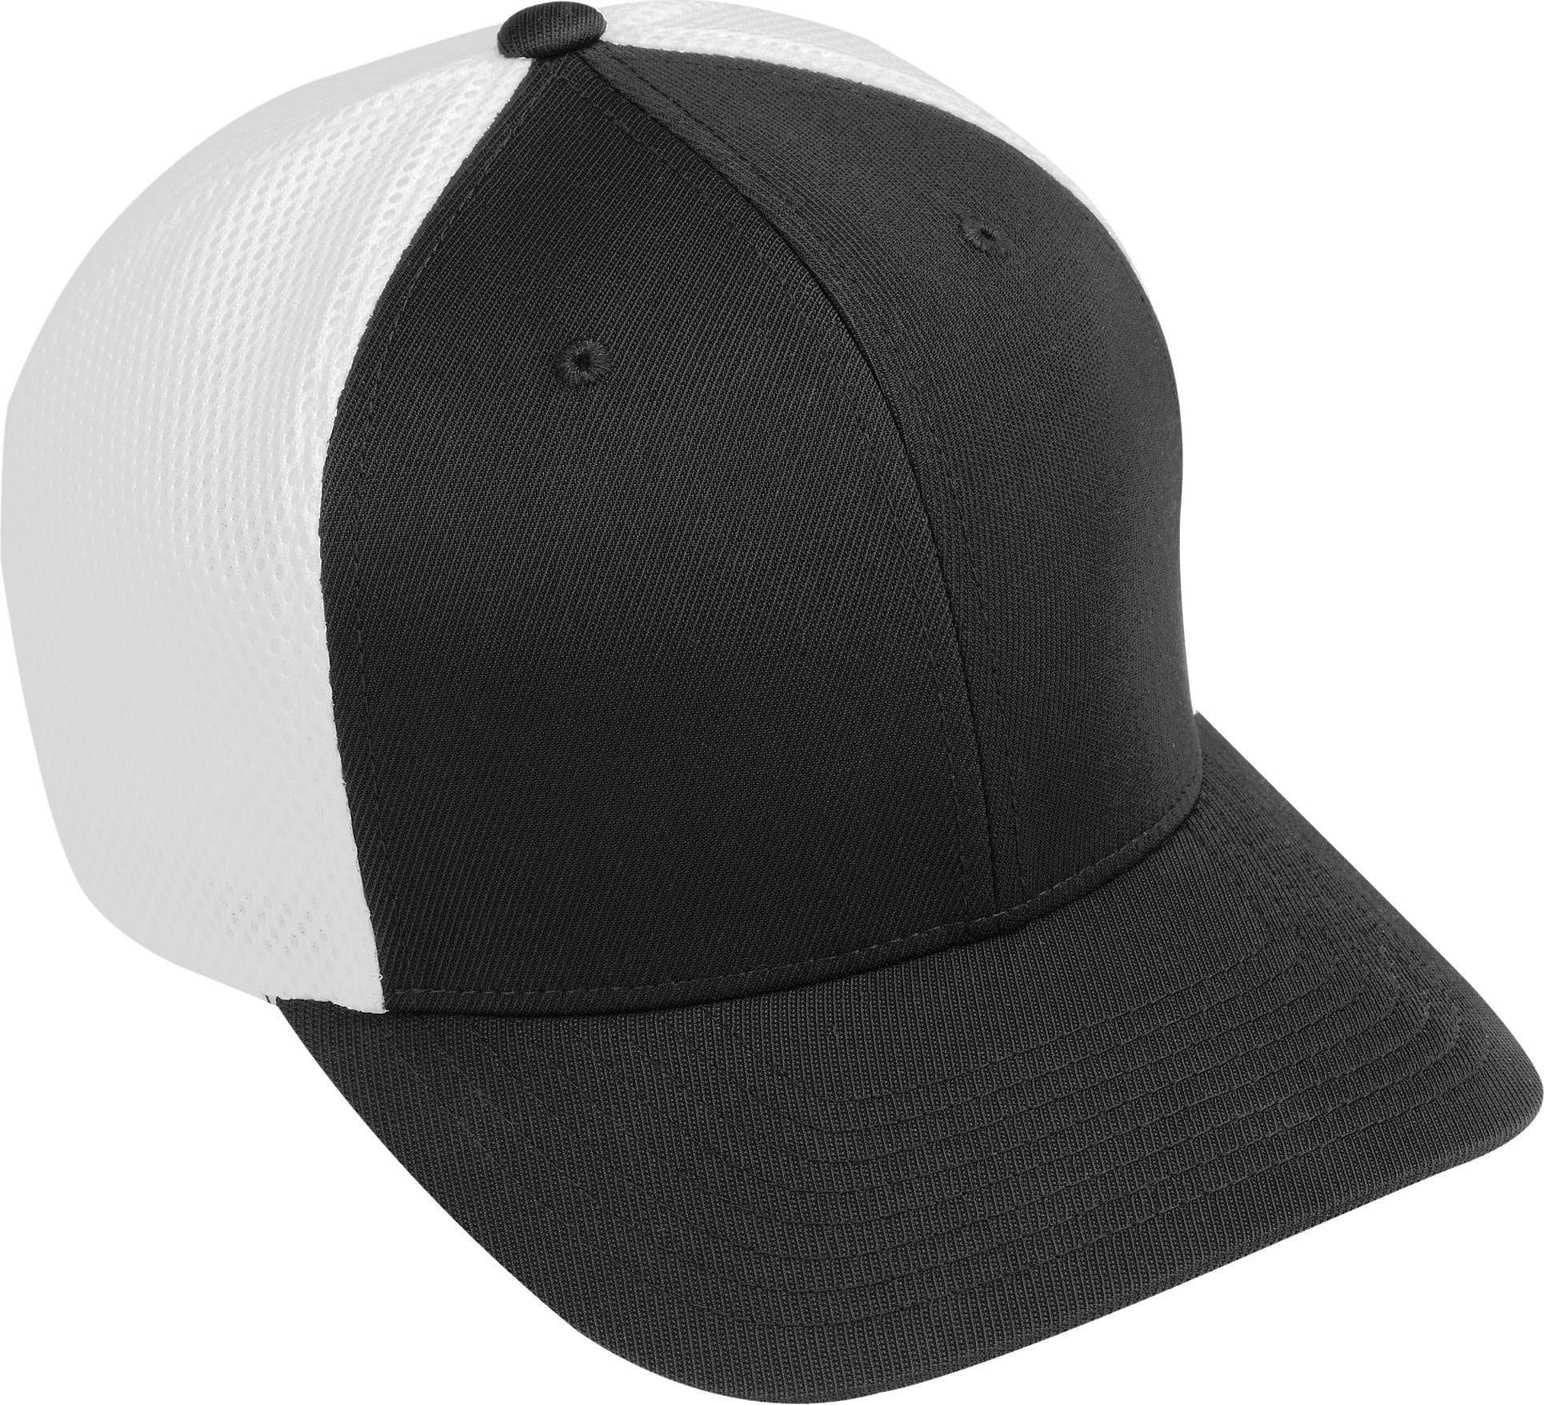 Augusta 6300 Flexfit Vapor Cap - Black White - HIT a Double